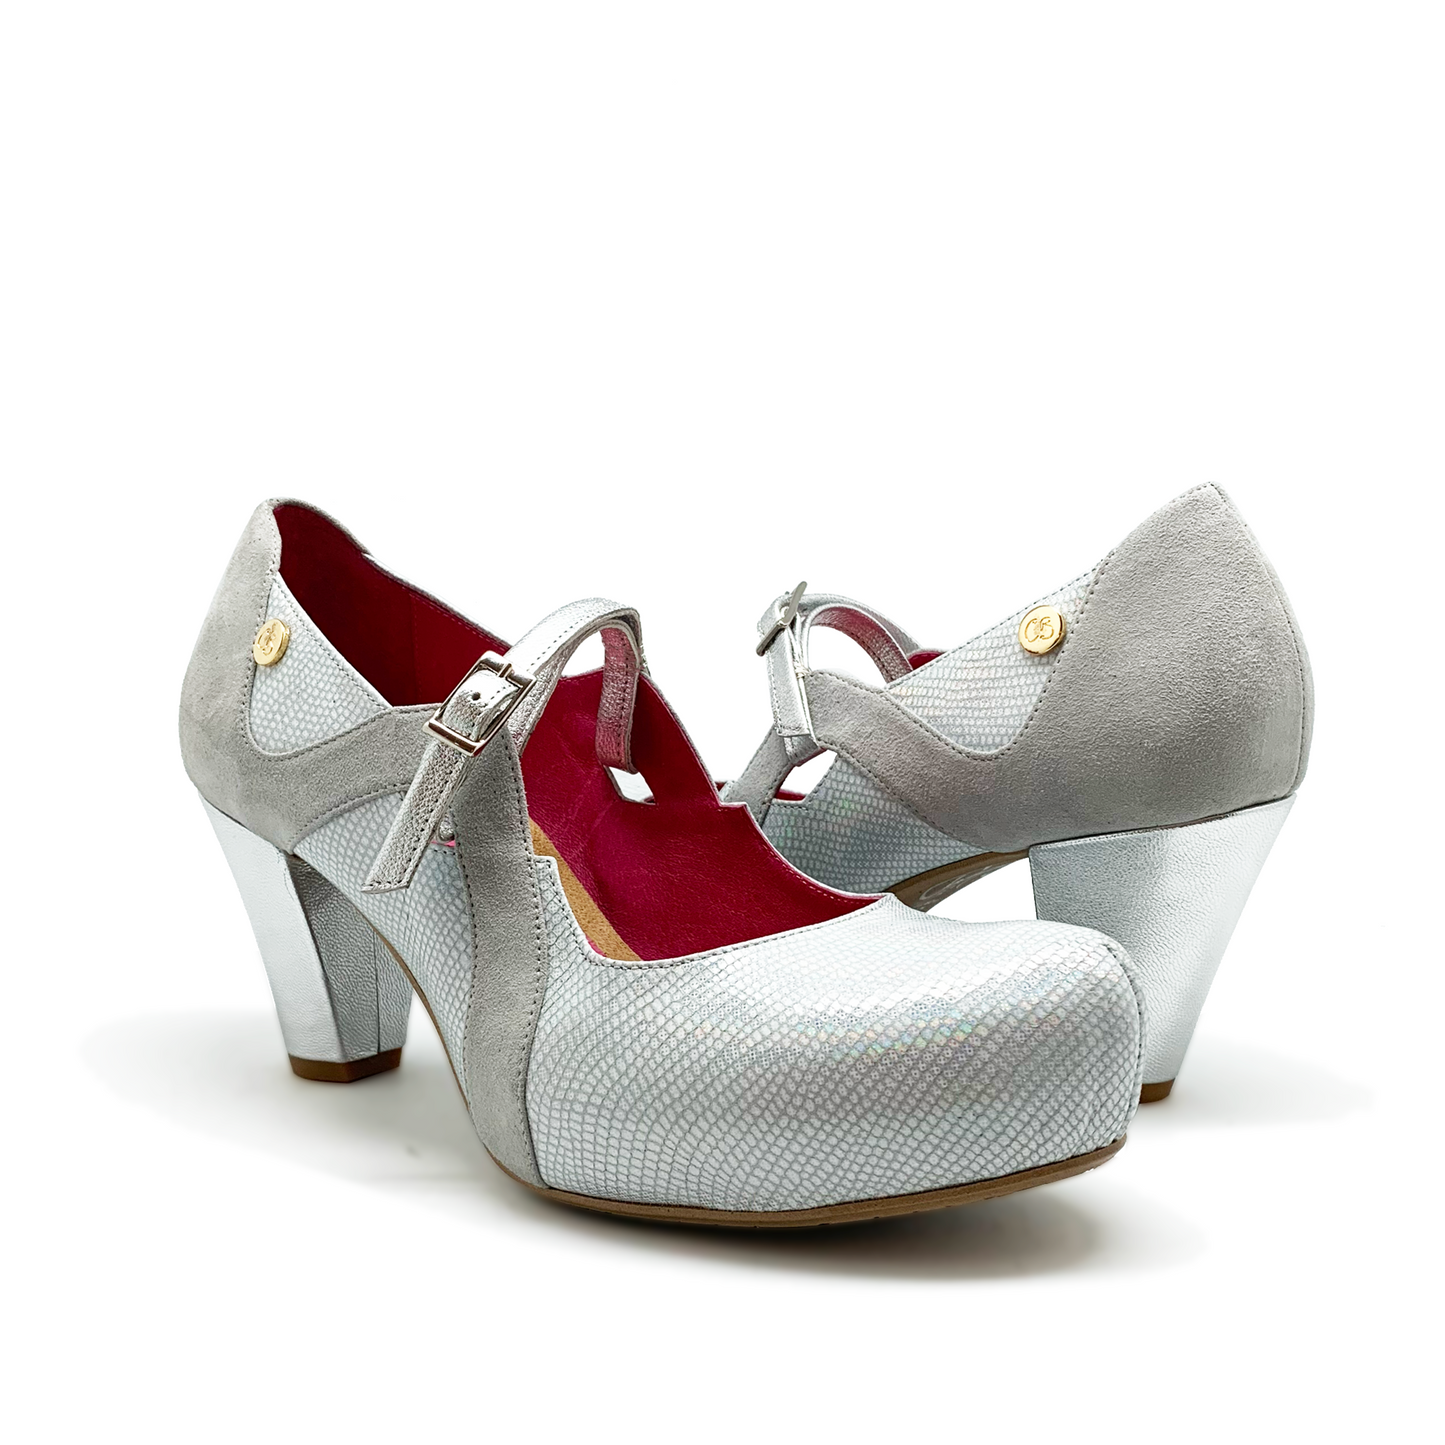 Prosecco -pearl white heel